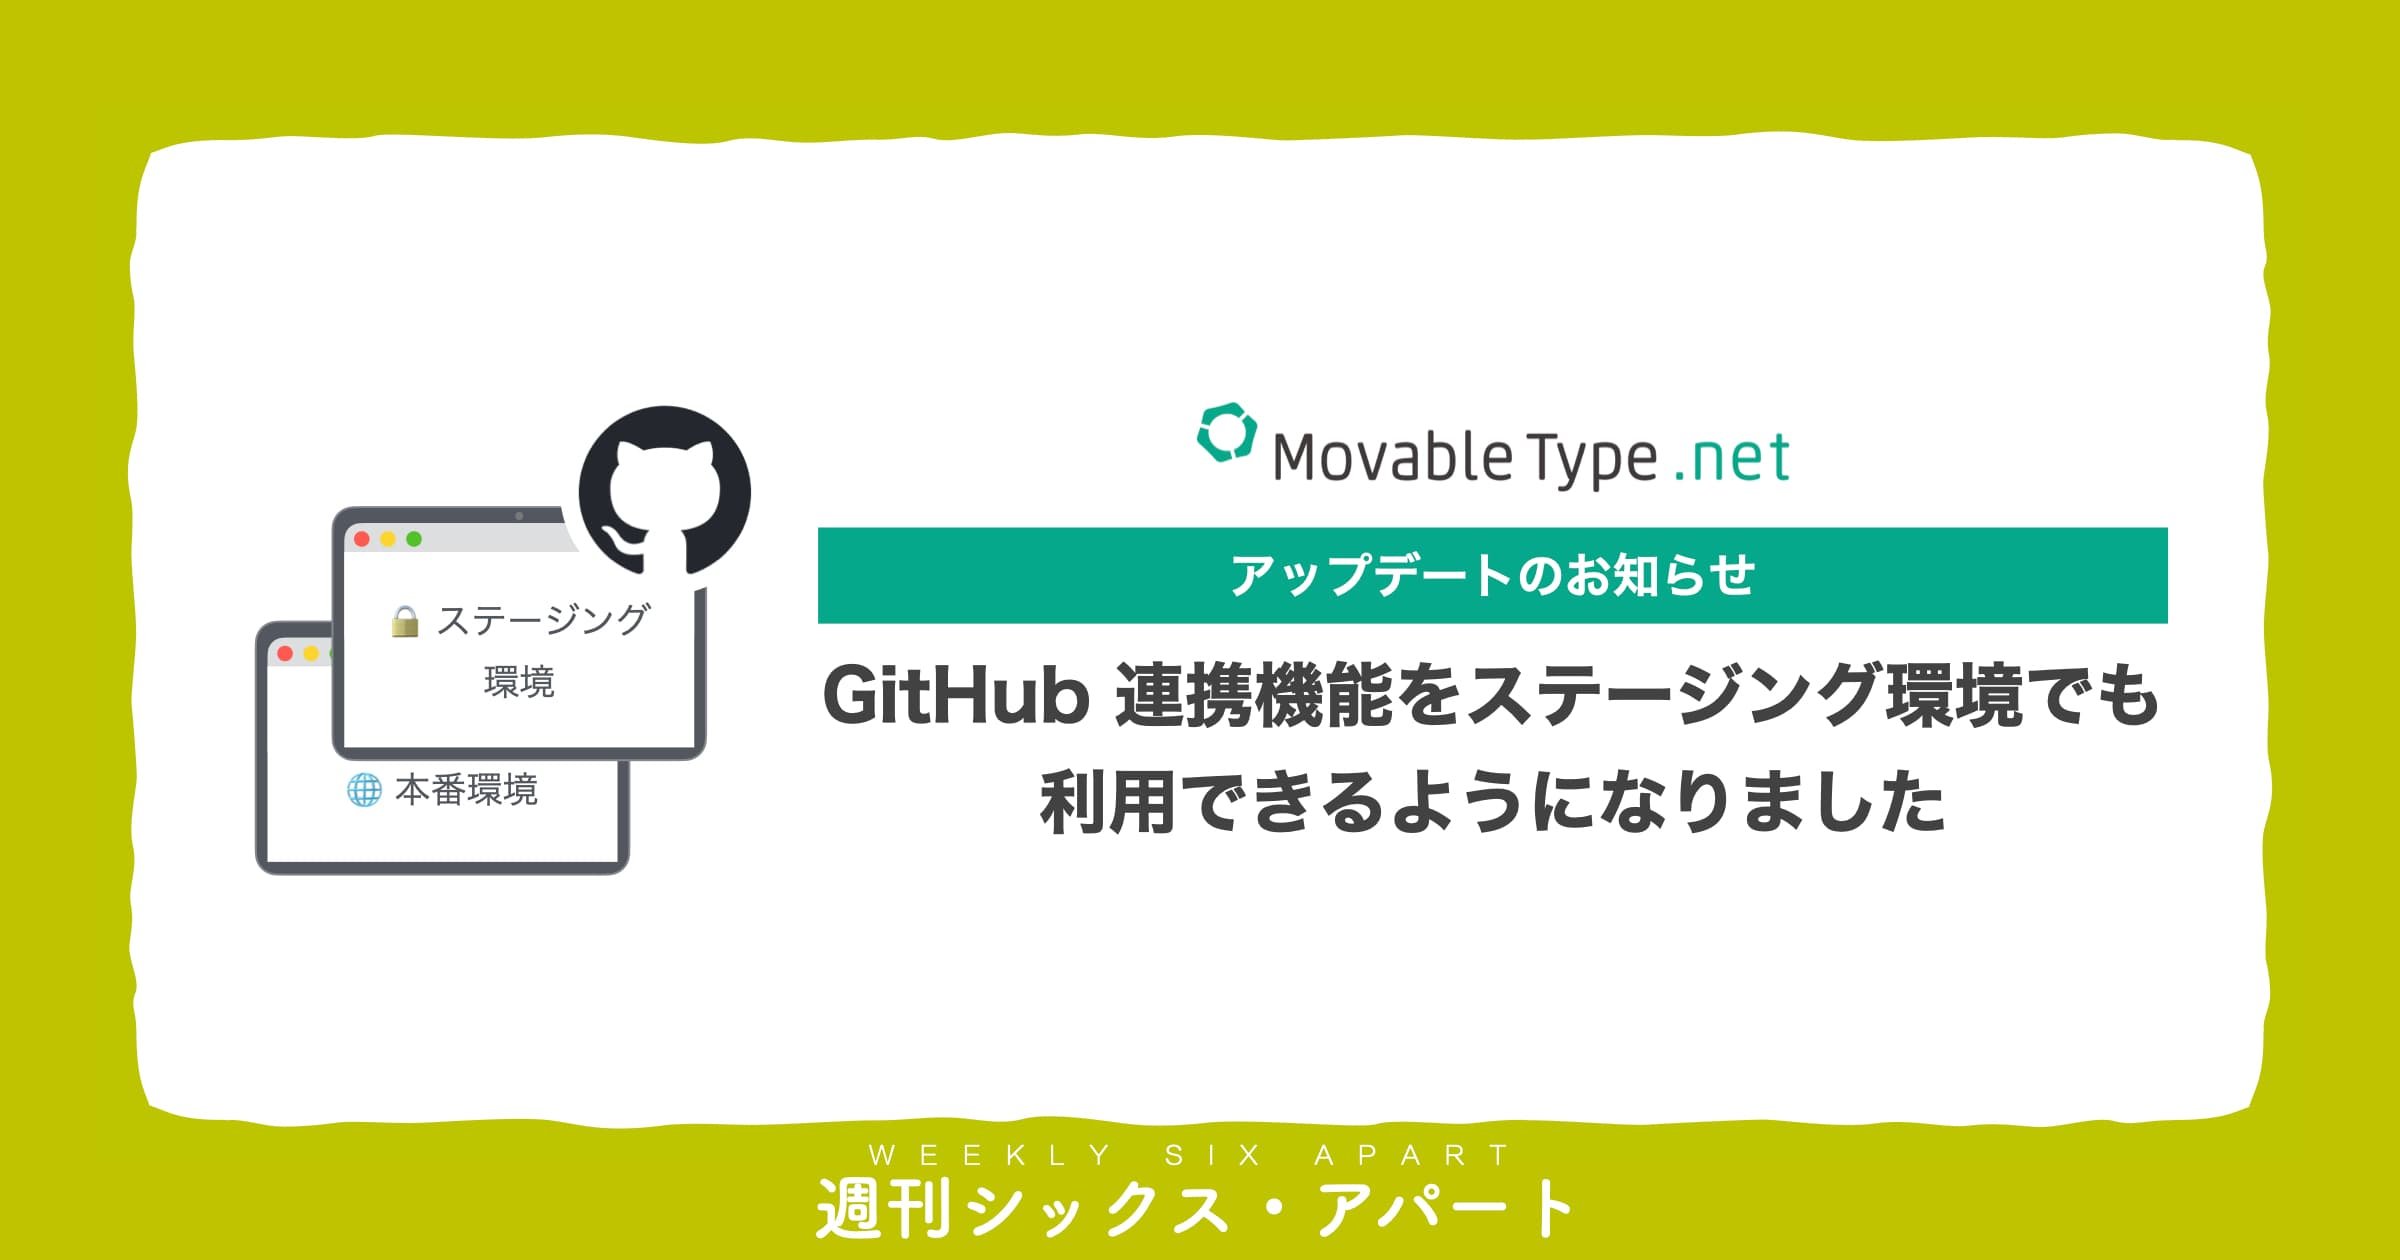 MovableType.net 新機能、GitHub 連携機能をステージング環境でも利用できるようになりました  #週刊SA